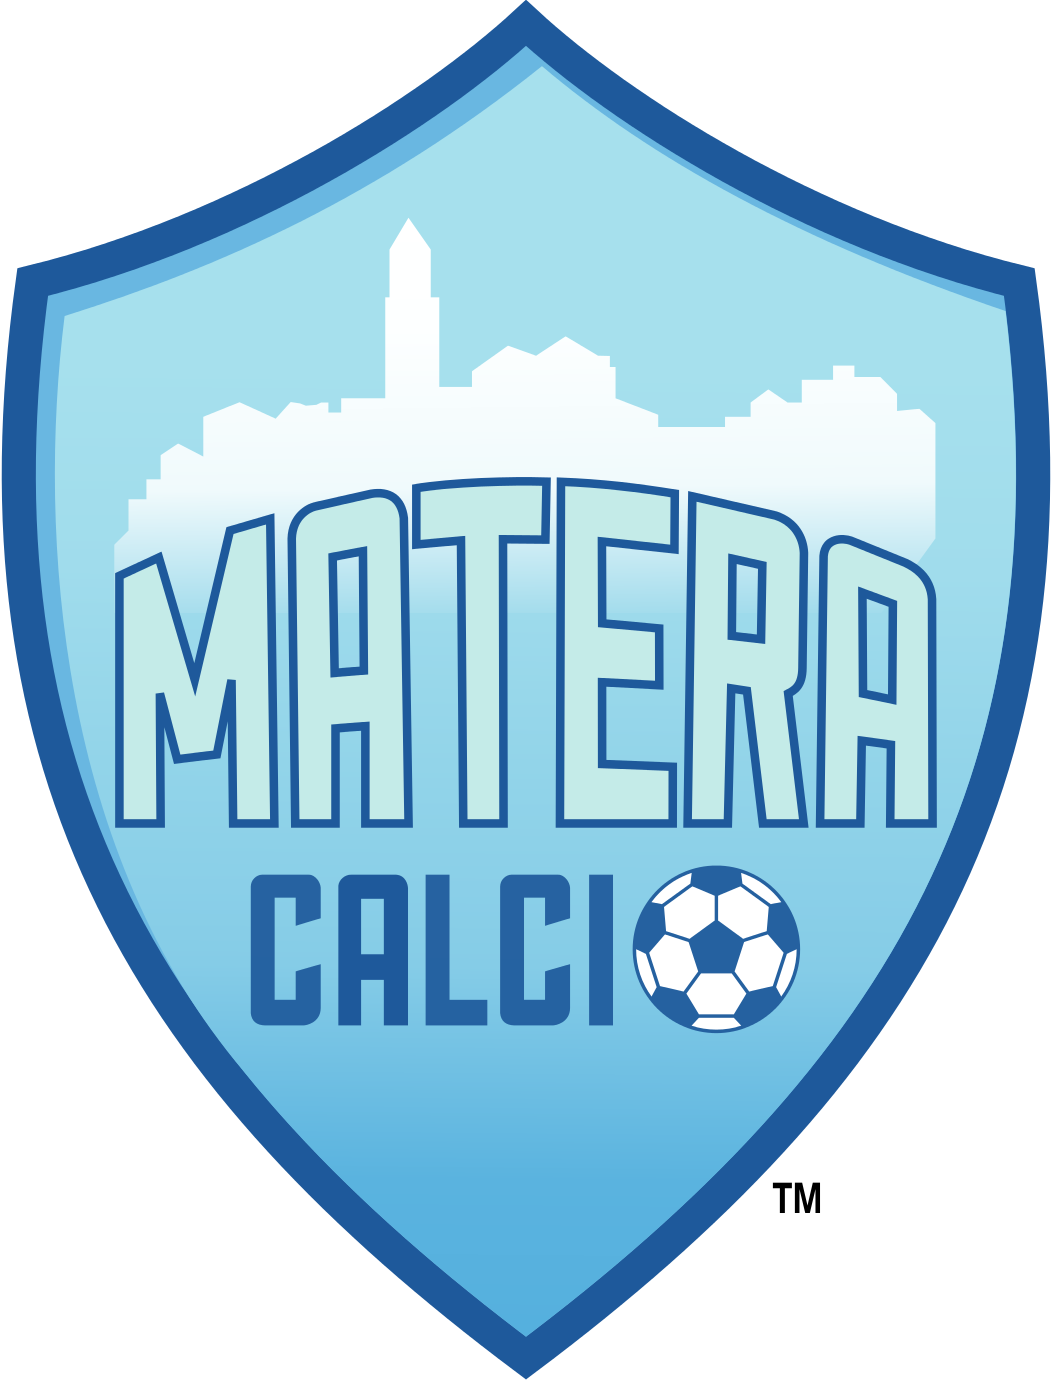 Матера Калчо - Logo